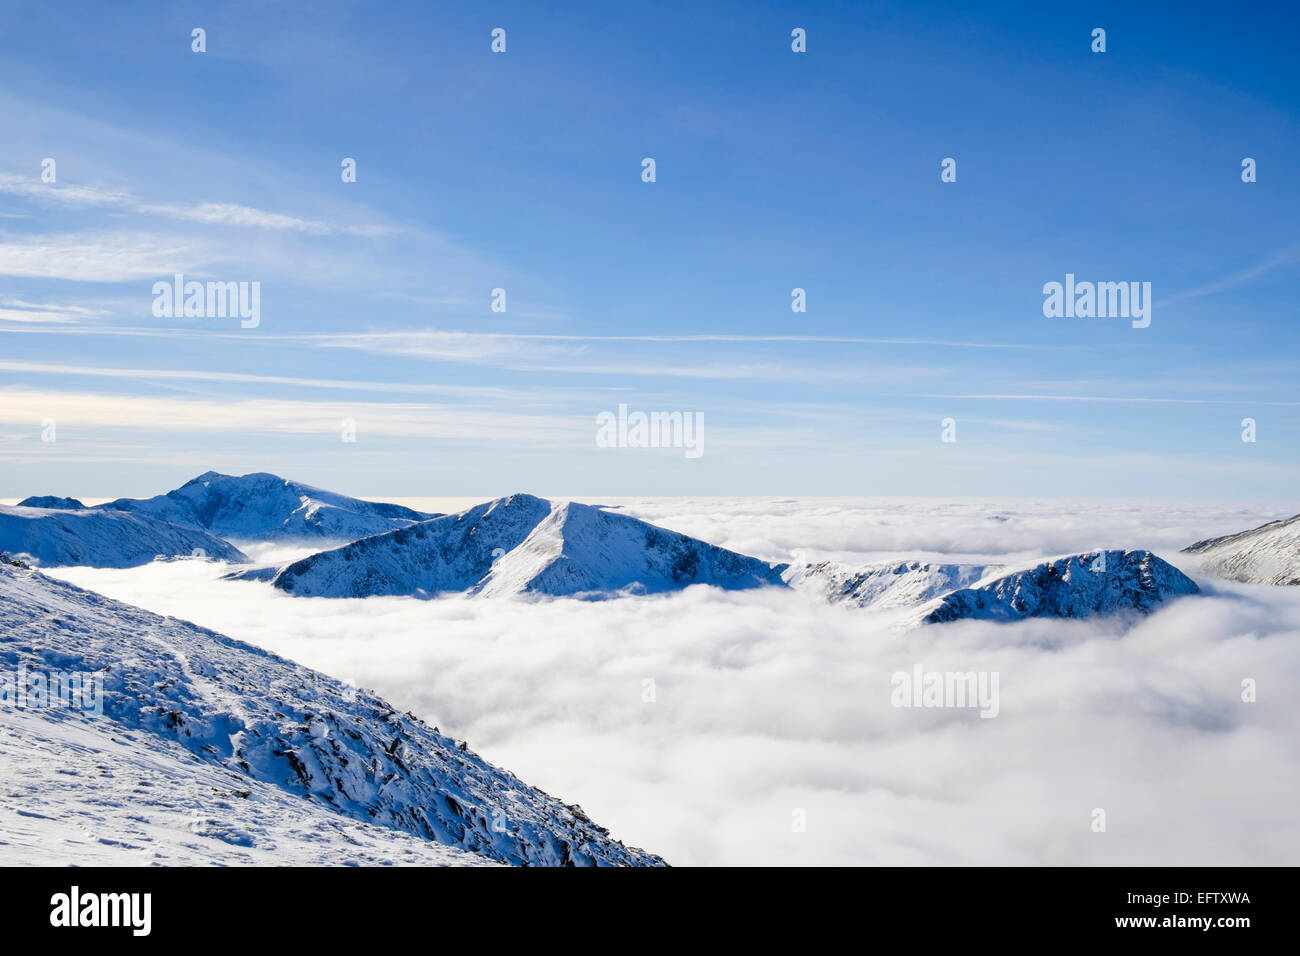 Snowdon, Y Garn et Foel Goch pics de montagne au-dessus des nuages bas causés par inversion de température à Nant Ffrancon Valley Wales Snowdonia UK Banque D'Images